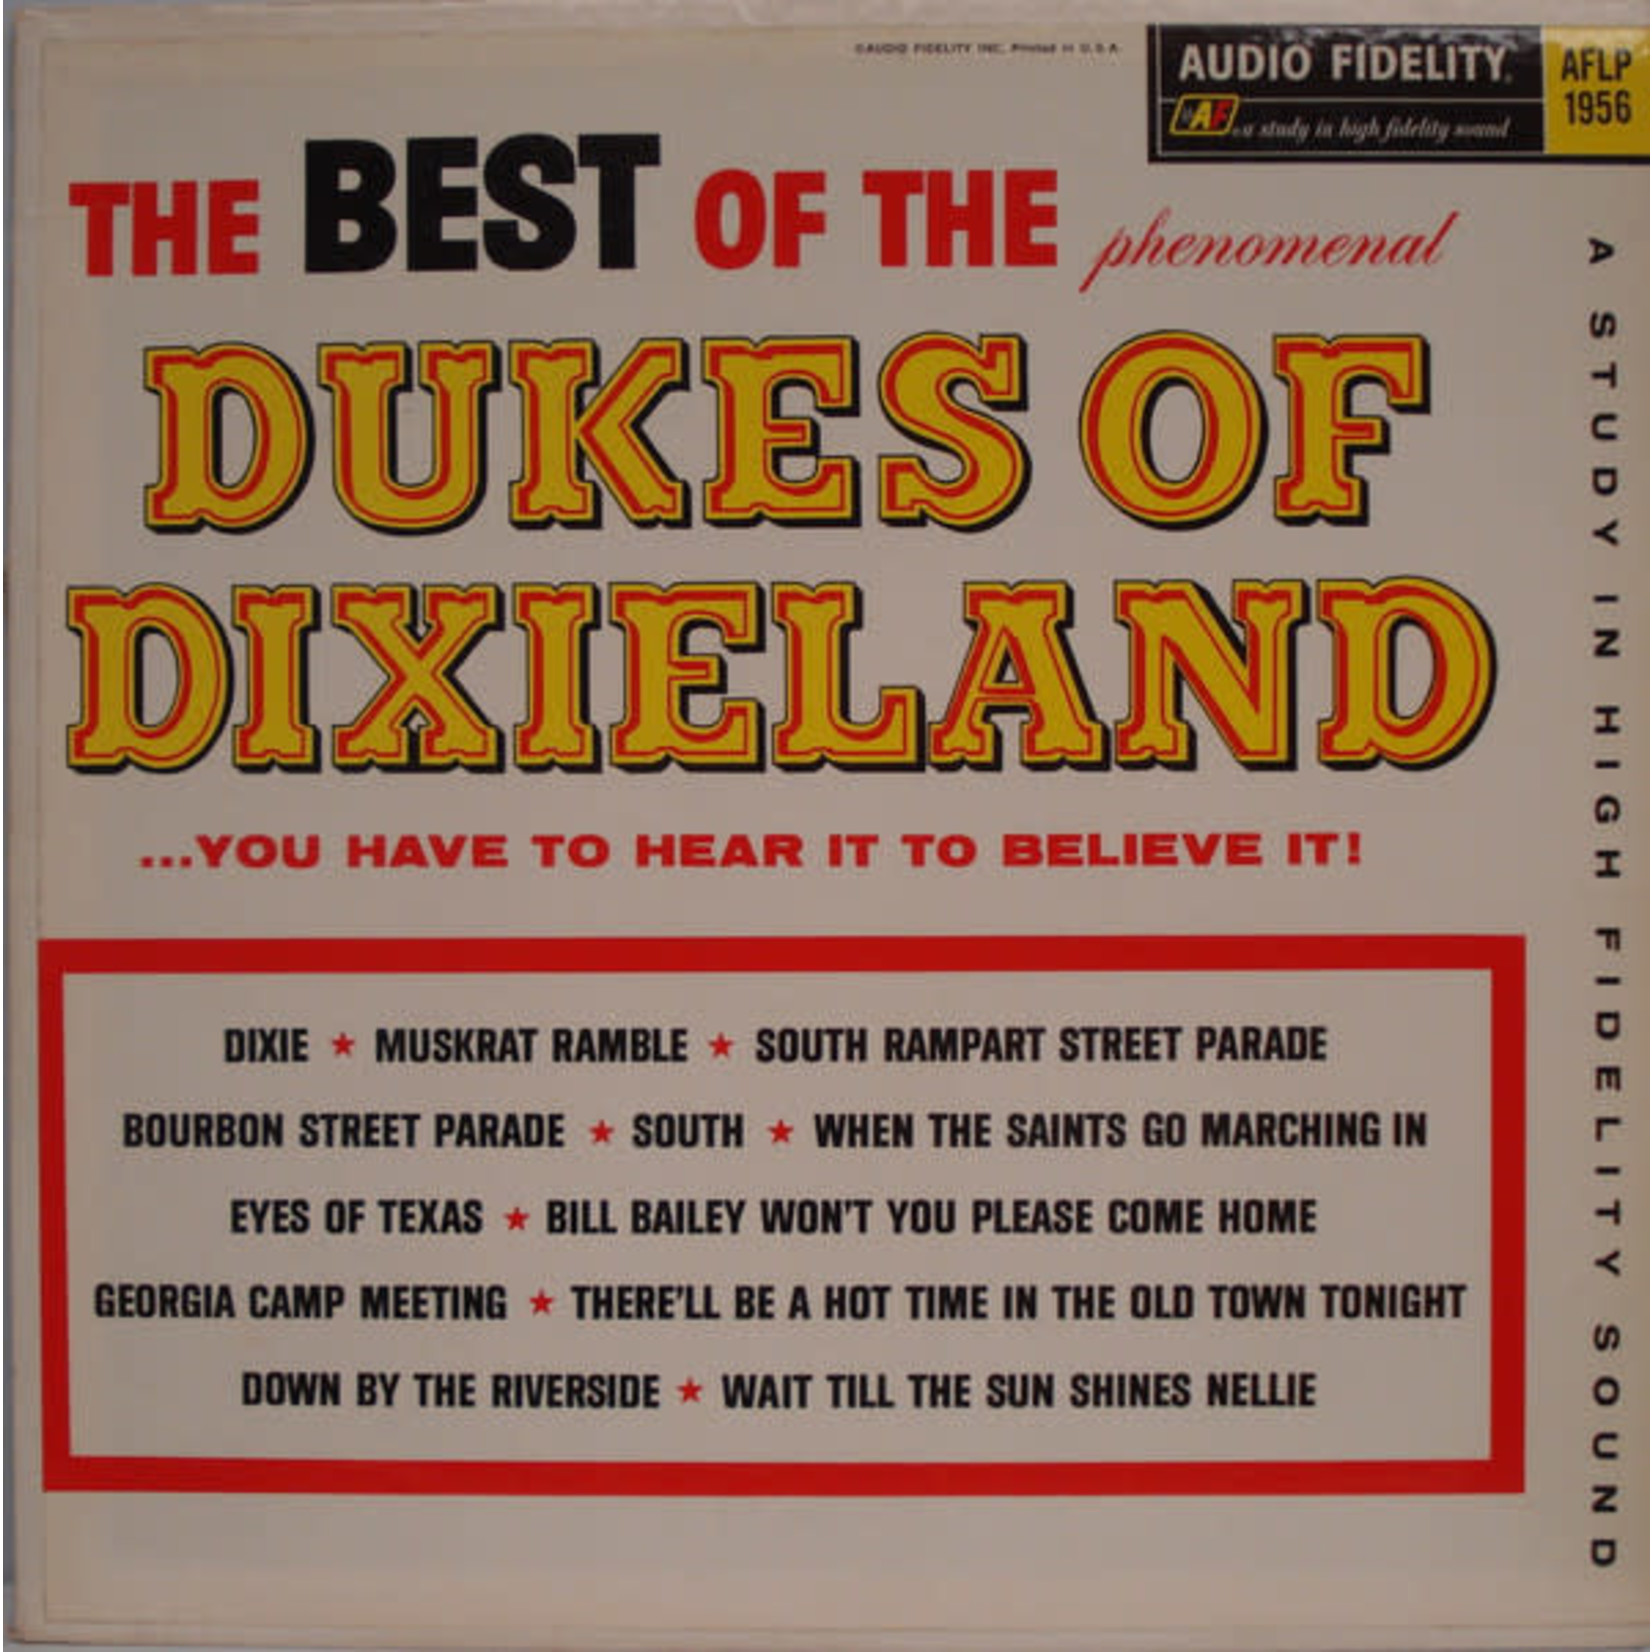 Dukes of Dixieland The Dukes Of Dixieland – The Best Of The Dukes Of Dixieland (VG, 1961, LP, Audio Fidelity – AFLP 1956)